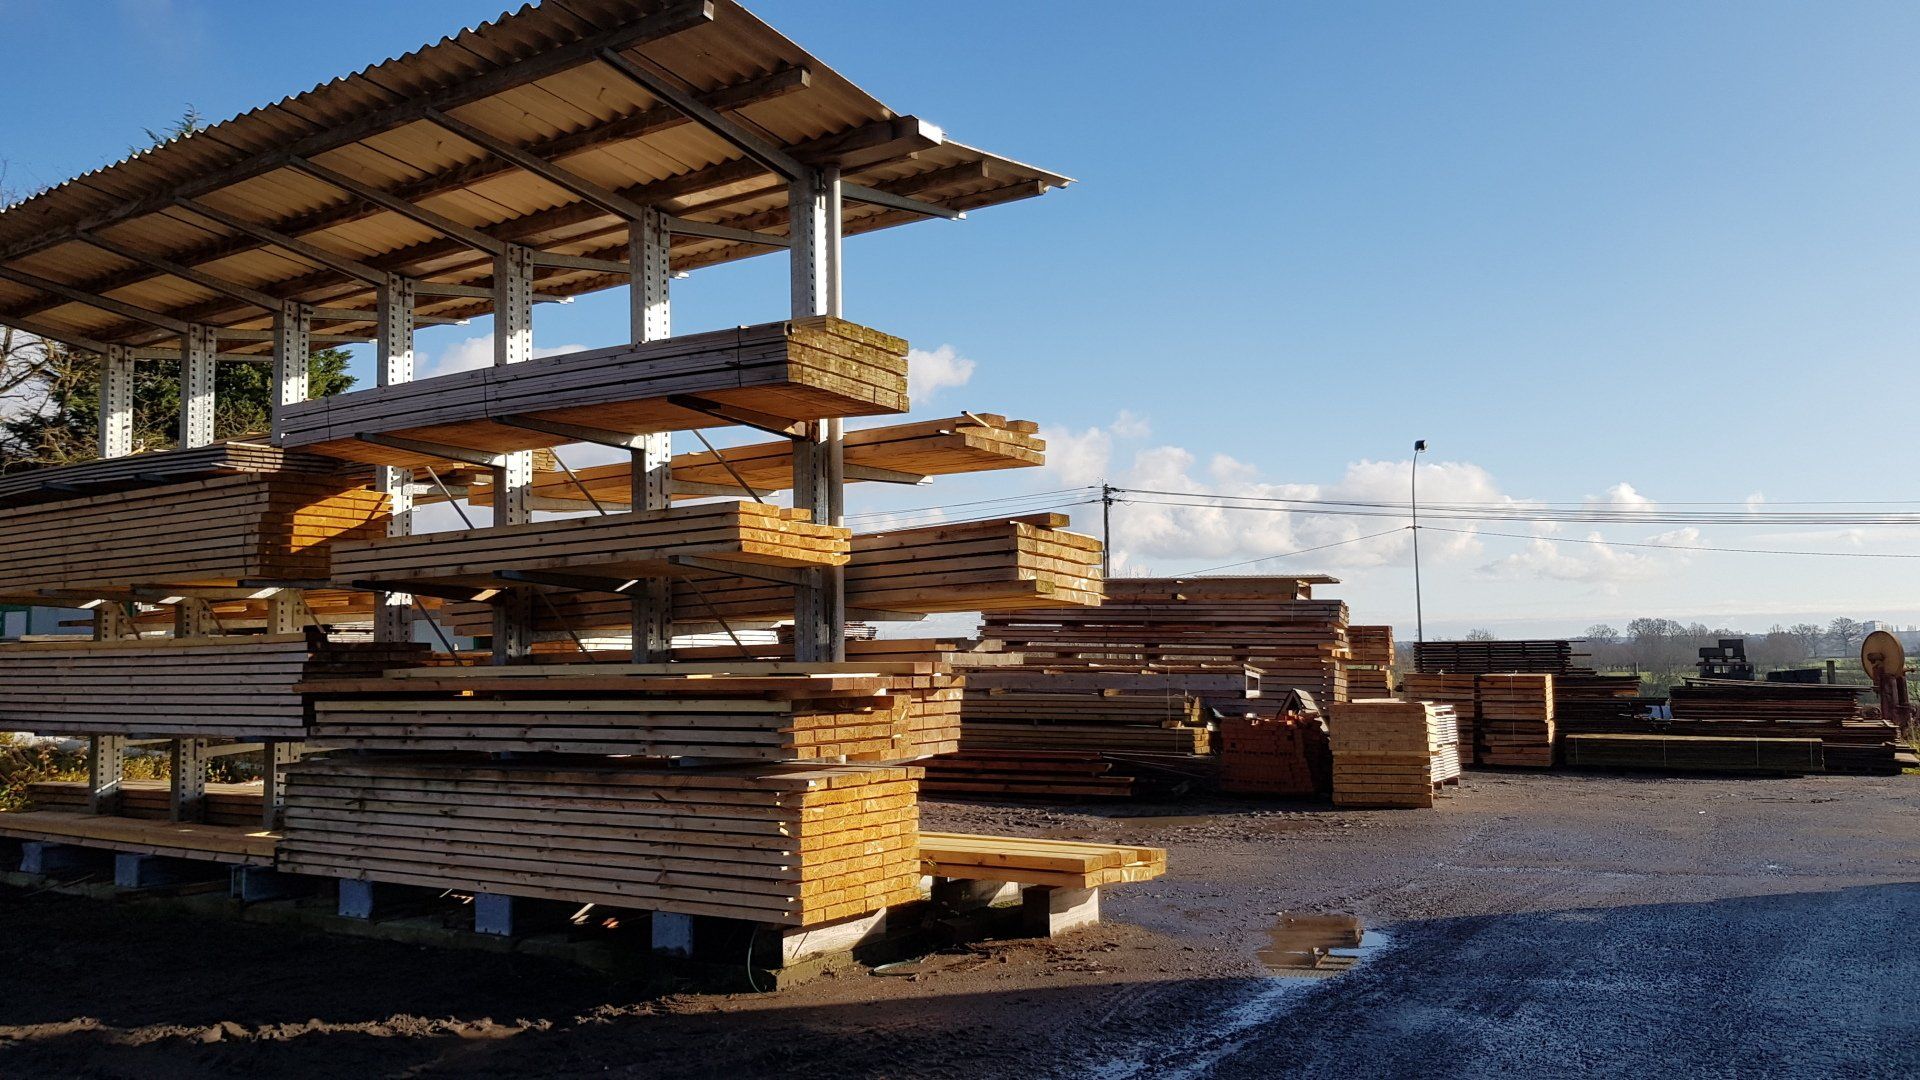 Vente de bois transformé pour construction